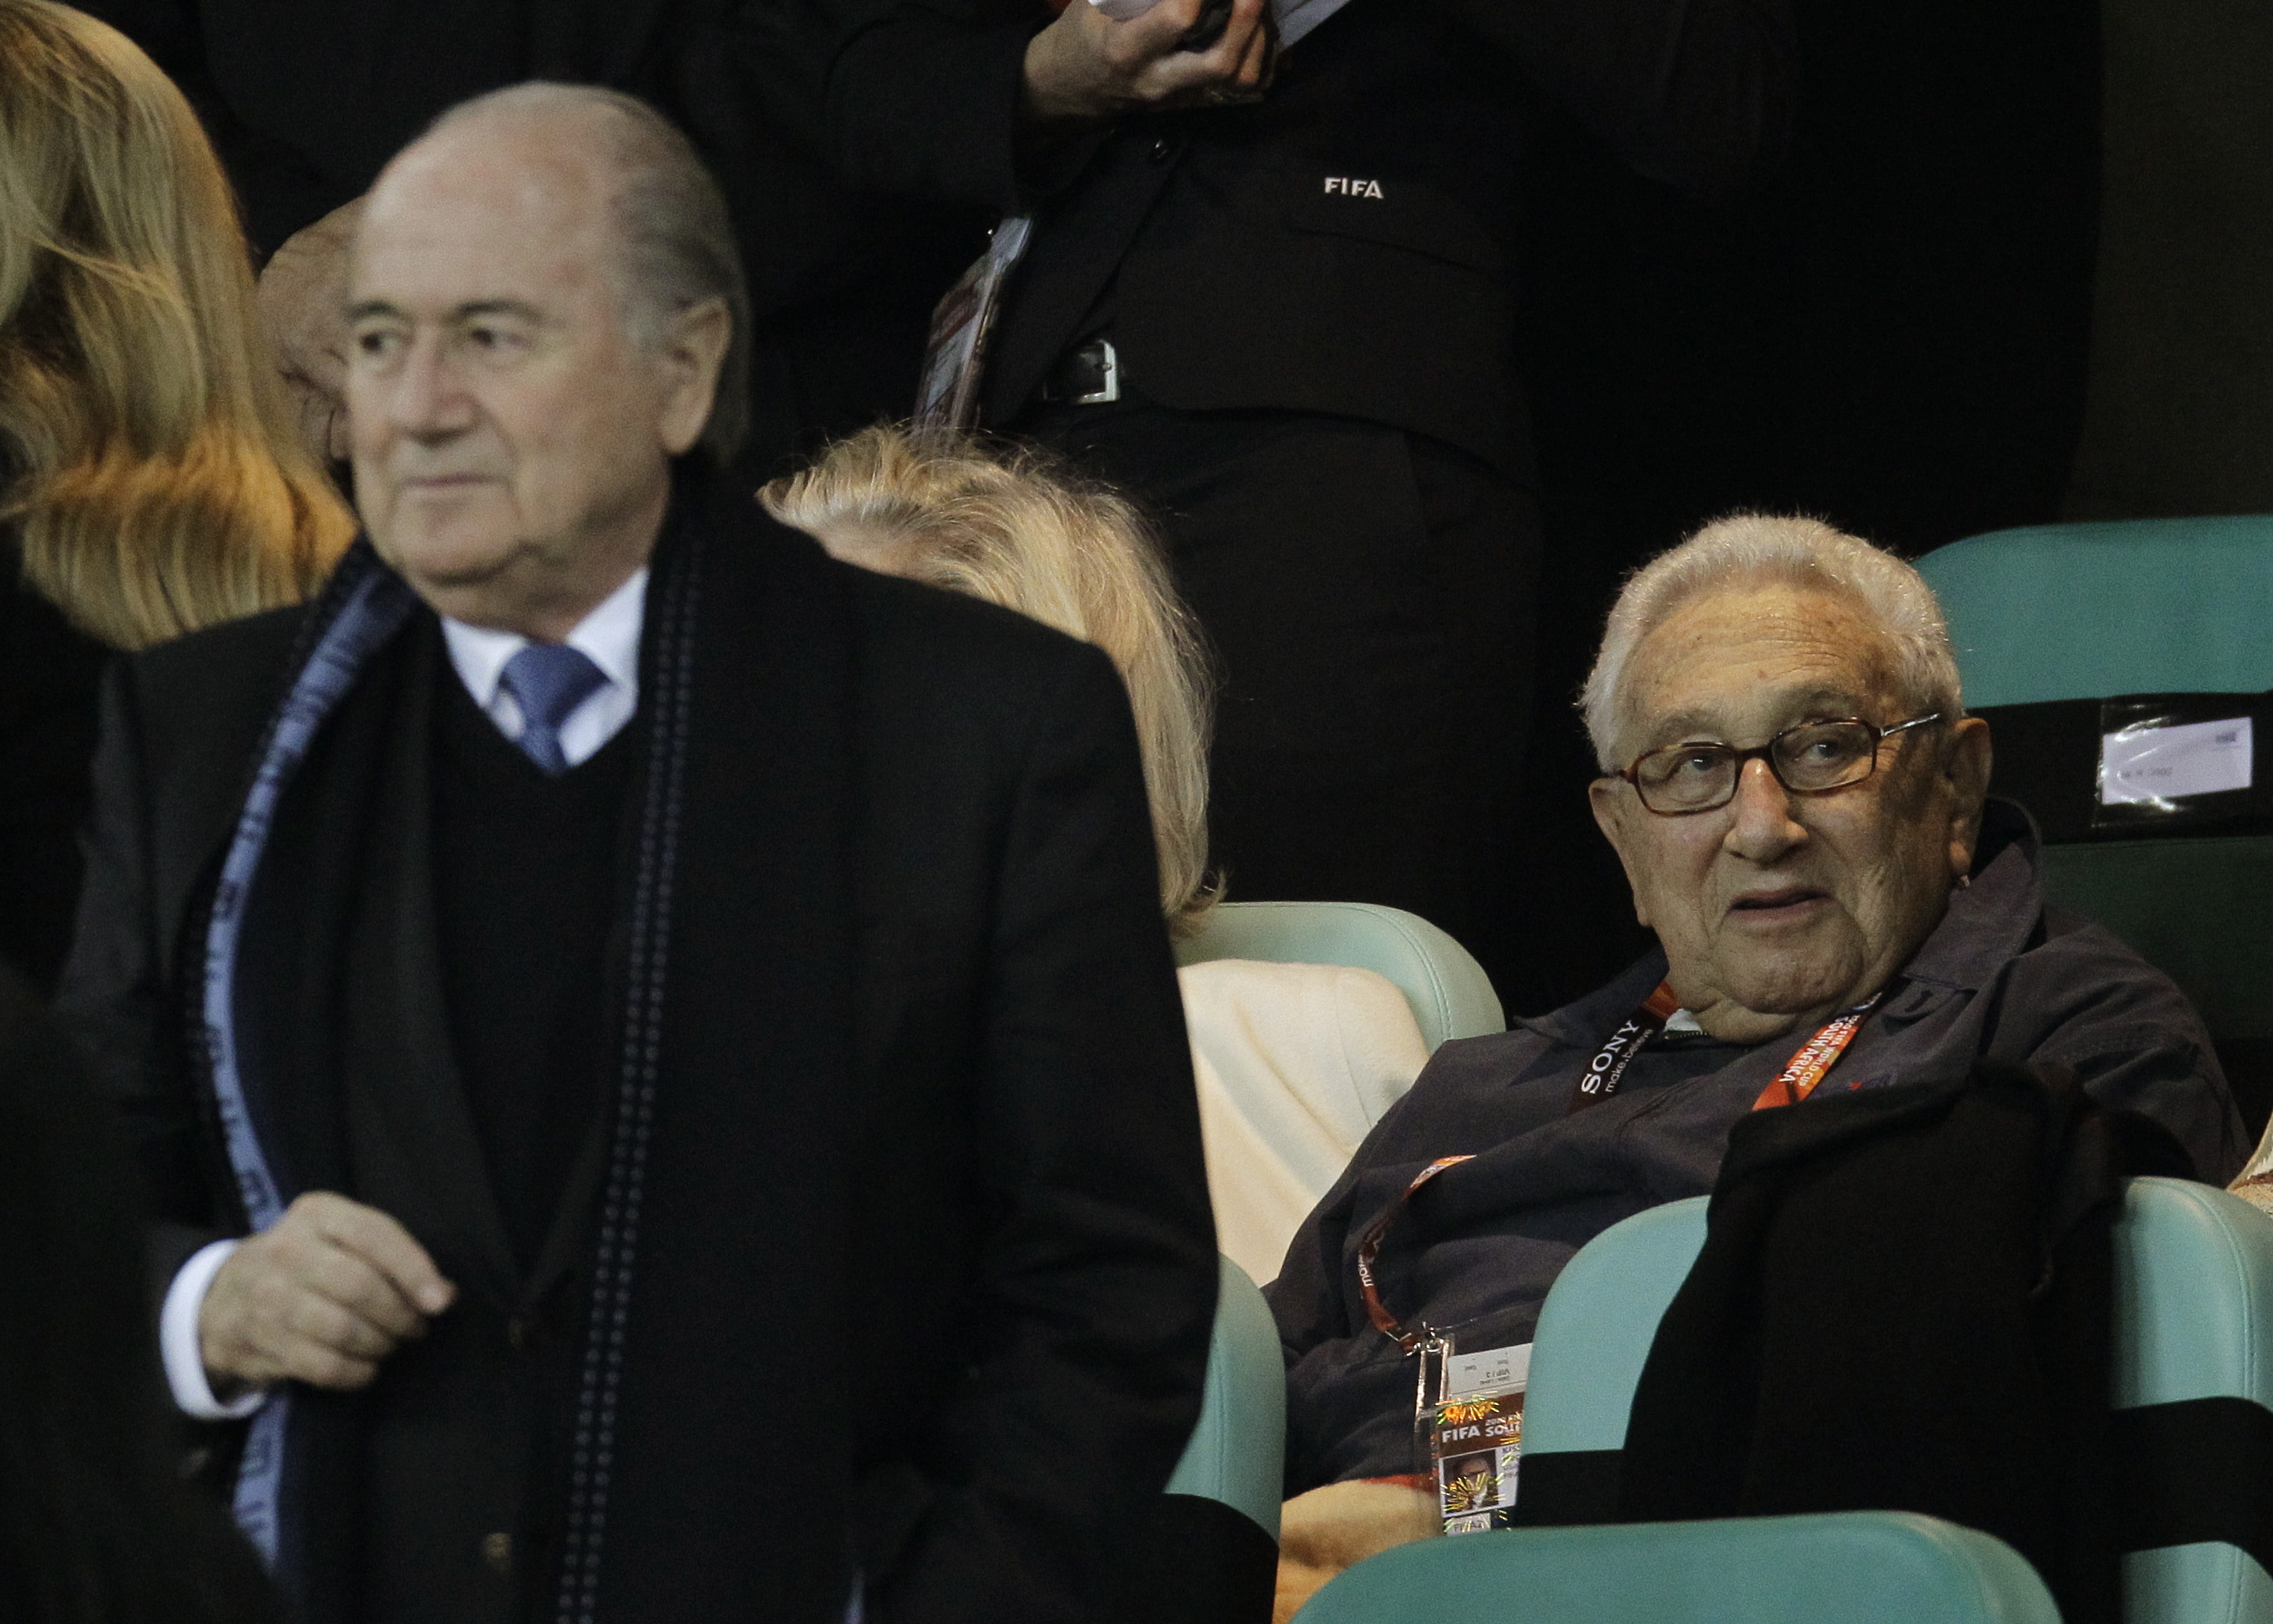 Krig, Henry Kissinger, fifa, Sepp Blatter